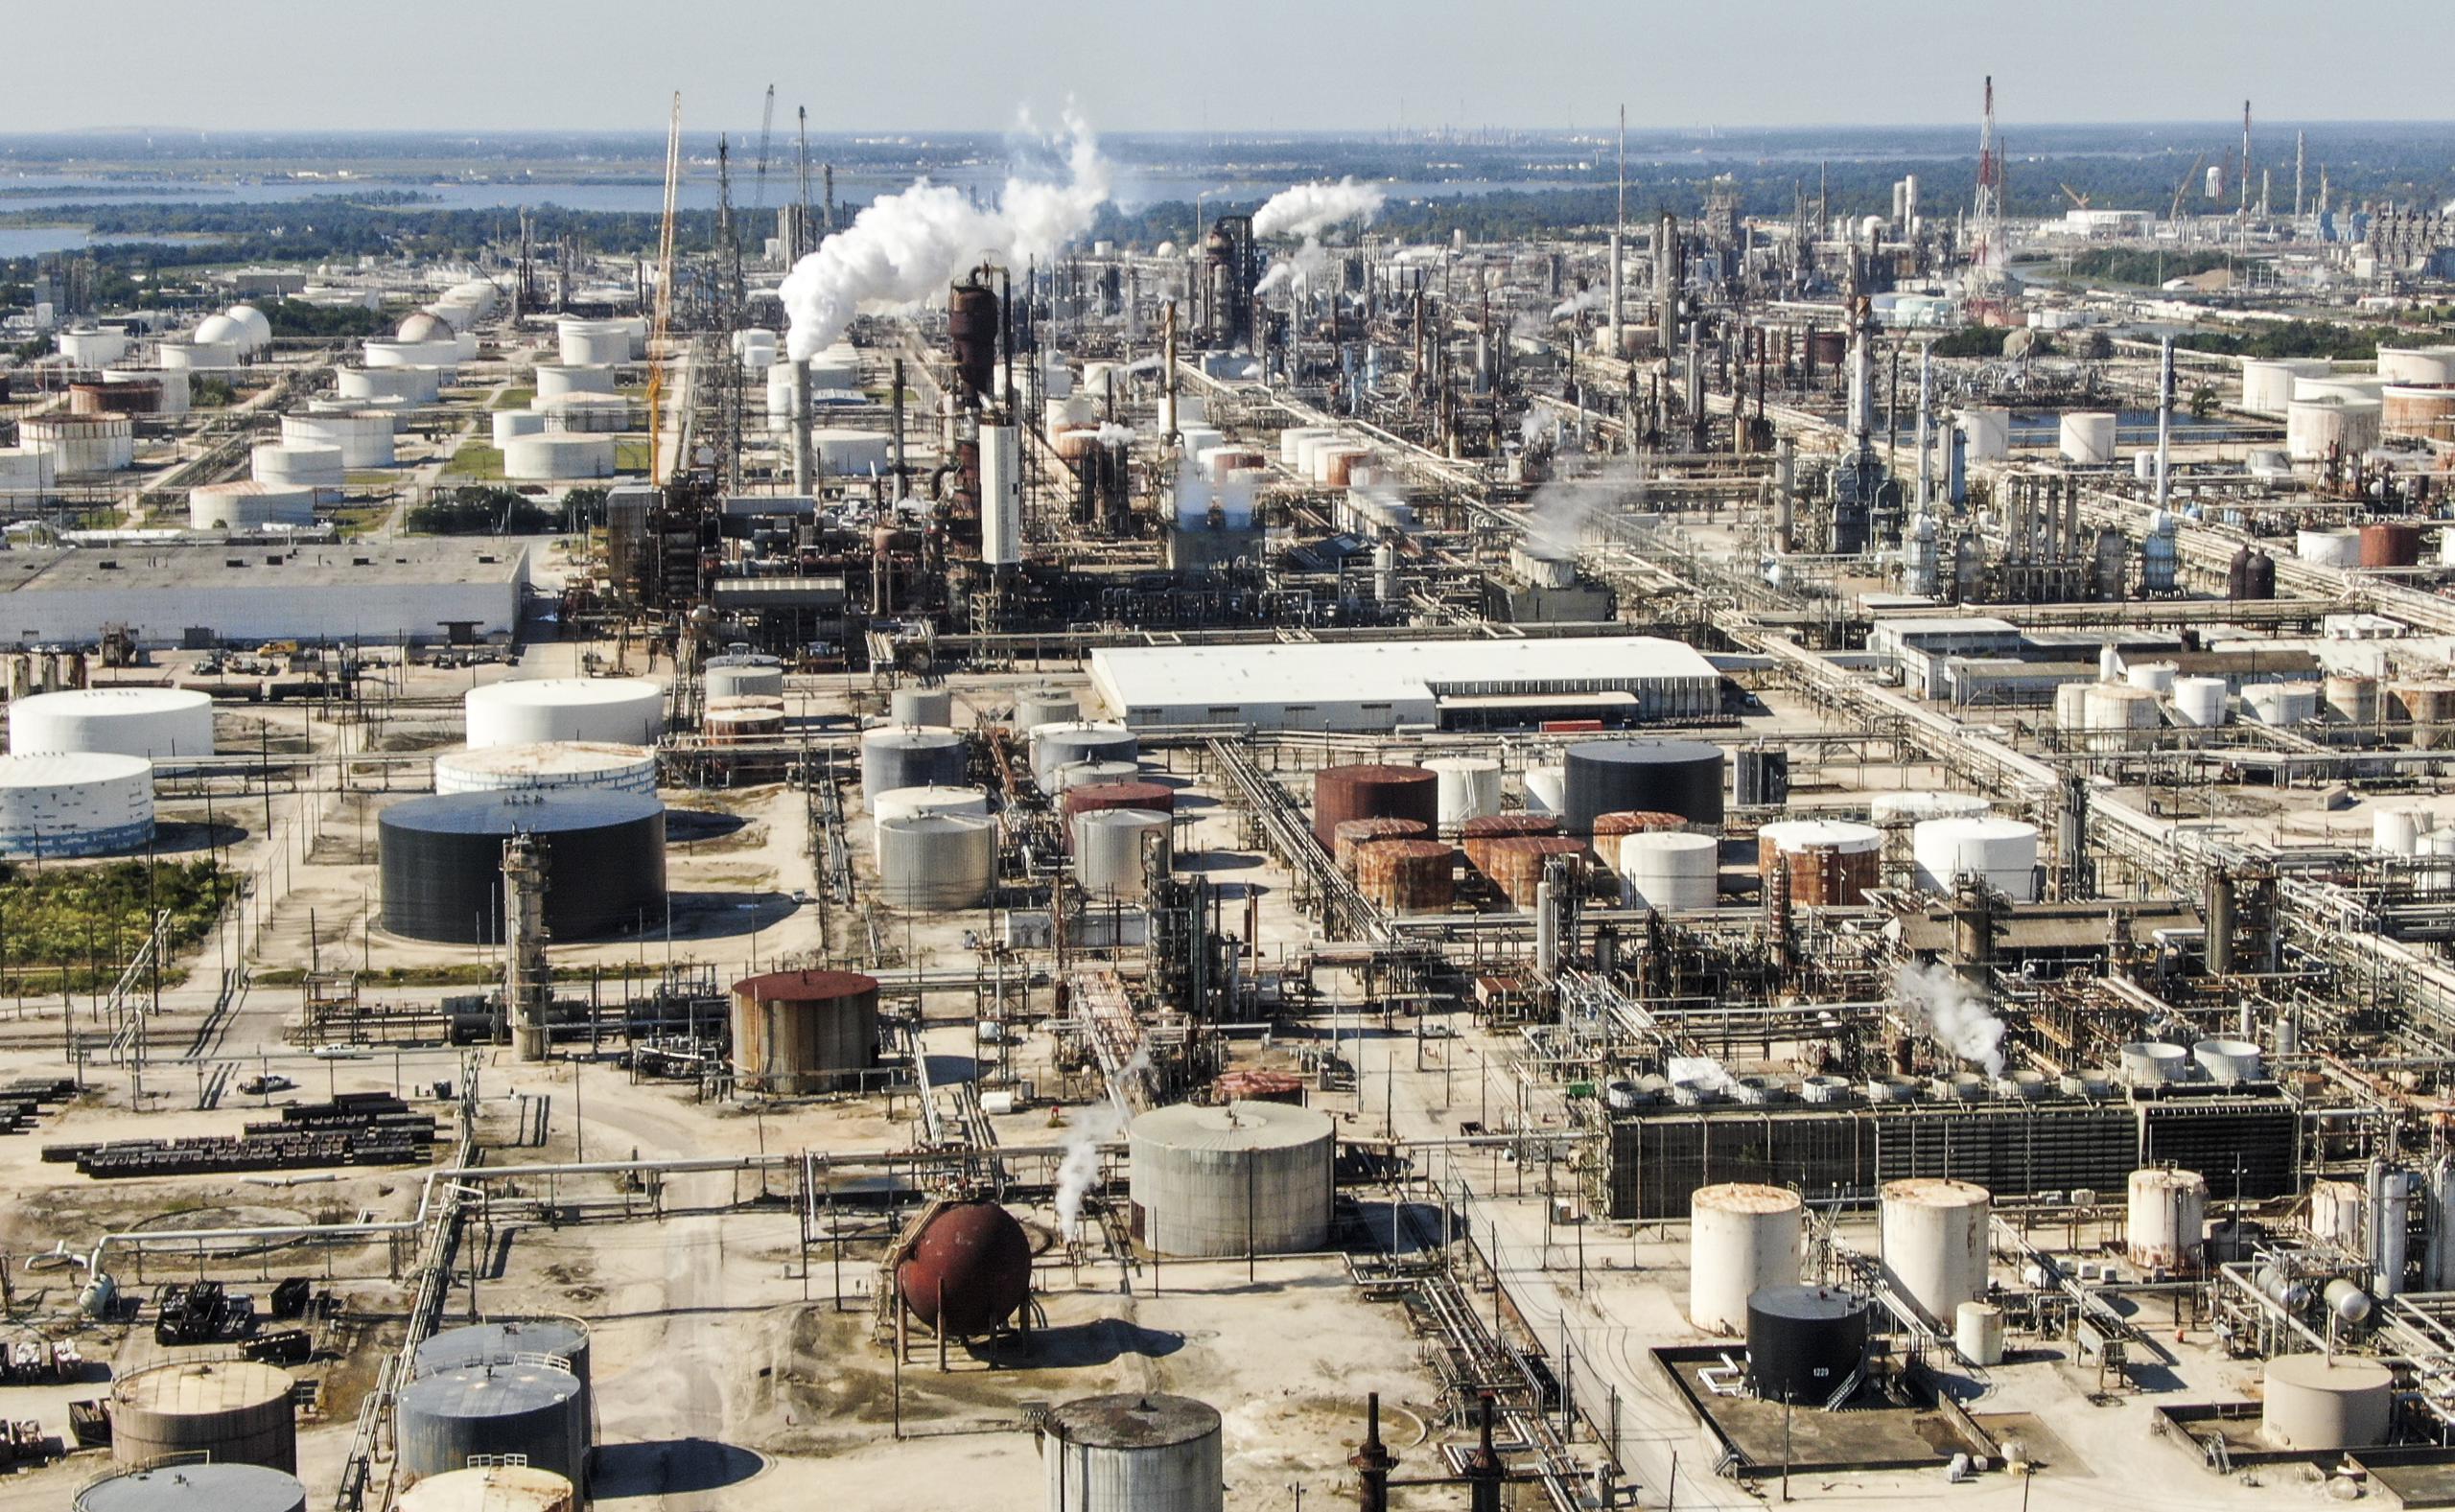 Fotografía de archivo hecha con un dron que muestra el complejo de refinación de petróleo de ExxonMobil en Baytown, Texas, EE.UU. EFE/EPA/Tannen Maury
